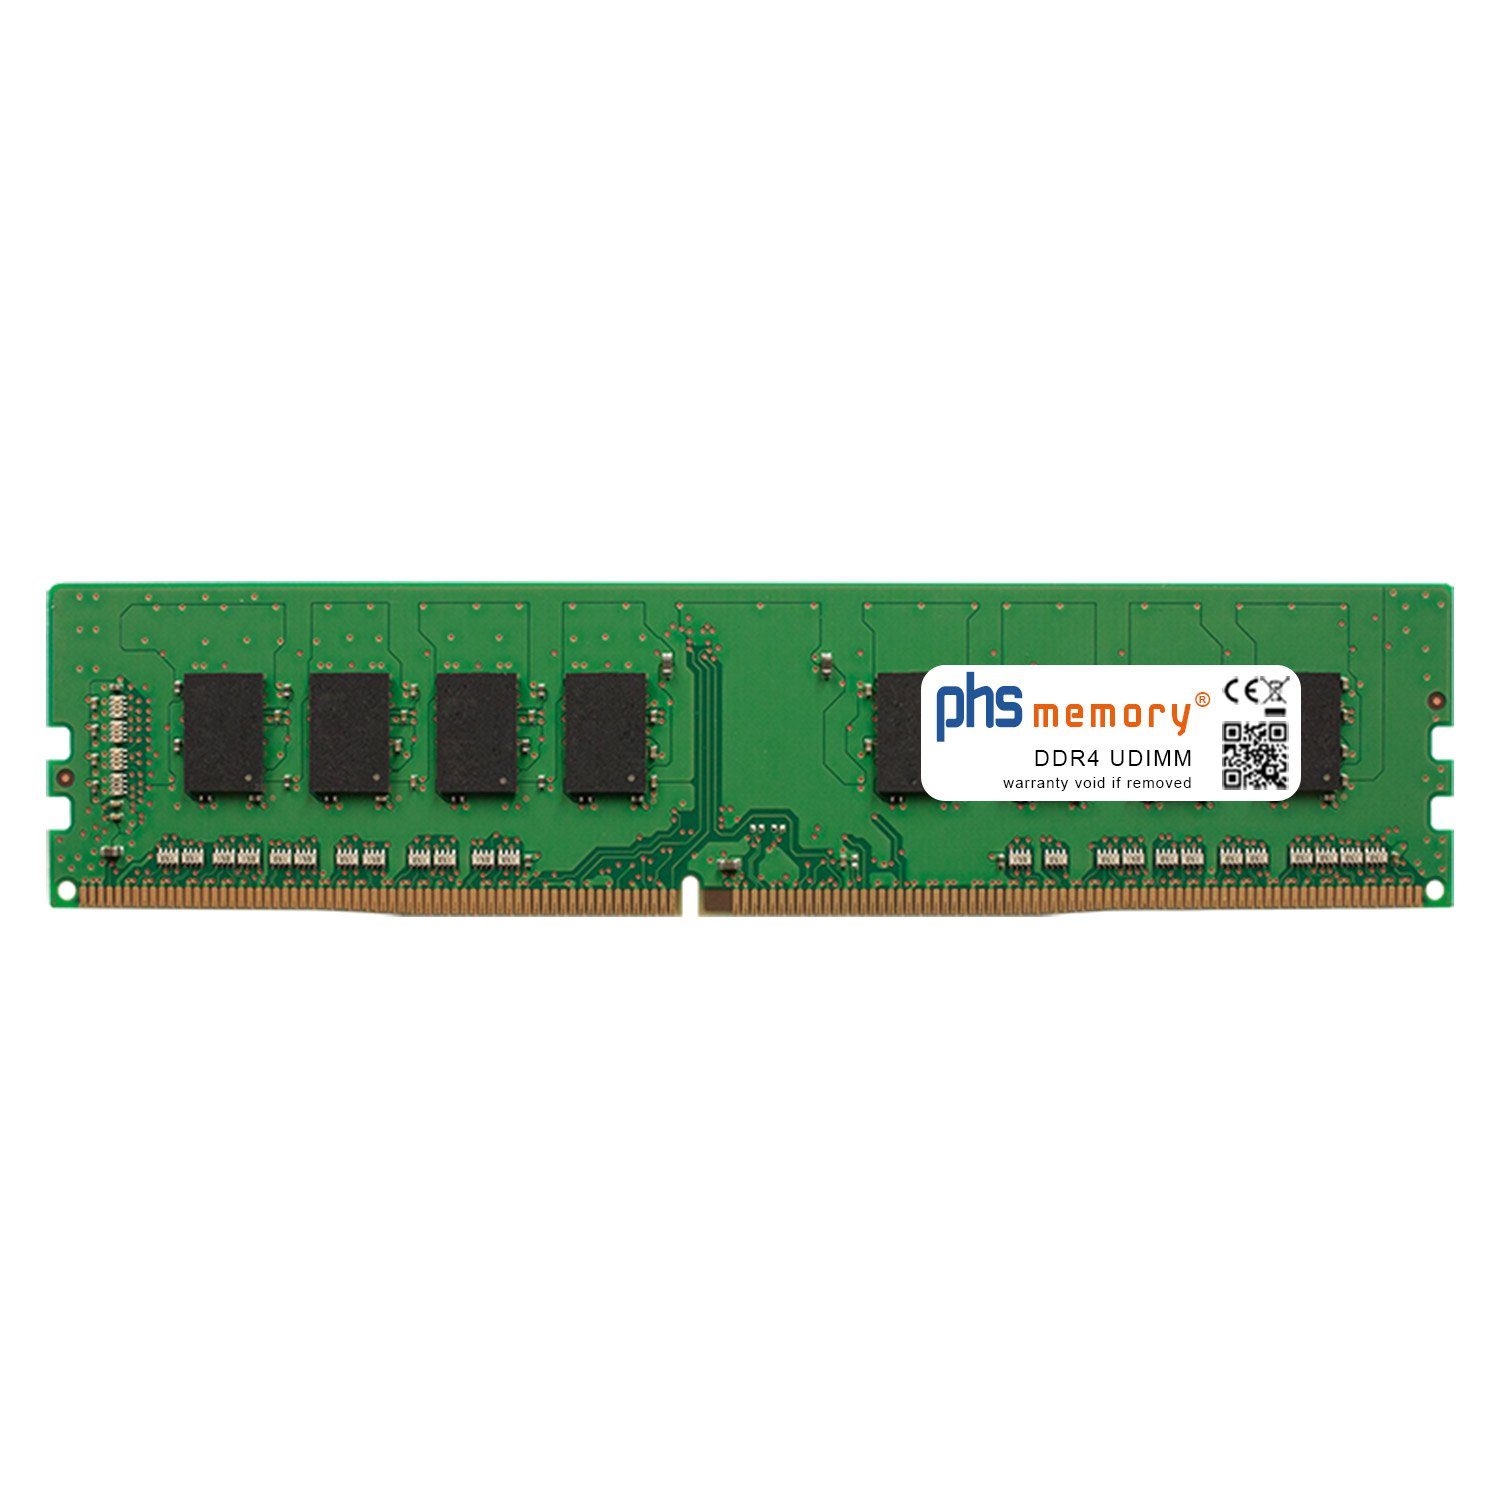 PHS-memory RAM für Captiva Advanced Gaming R65-529 Arbeitsspeicher